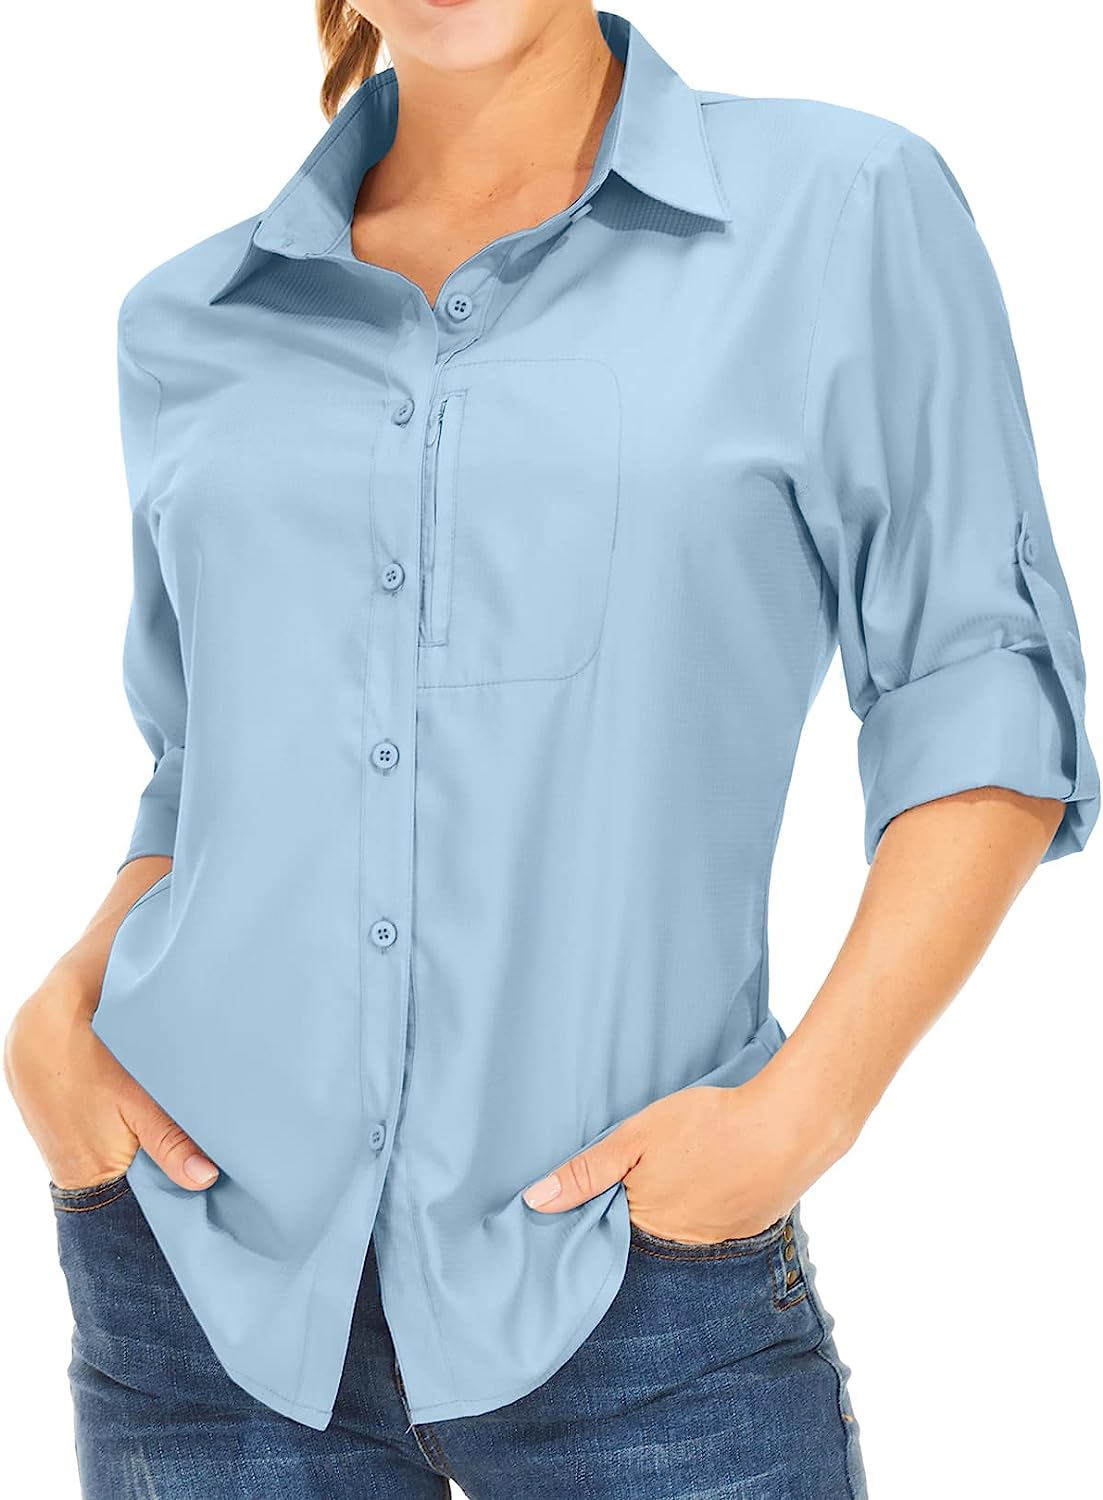 Women's UPF 50+ Sun Protection Shirts Long Sleeve Fishing Shirts